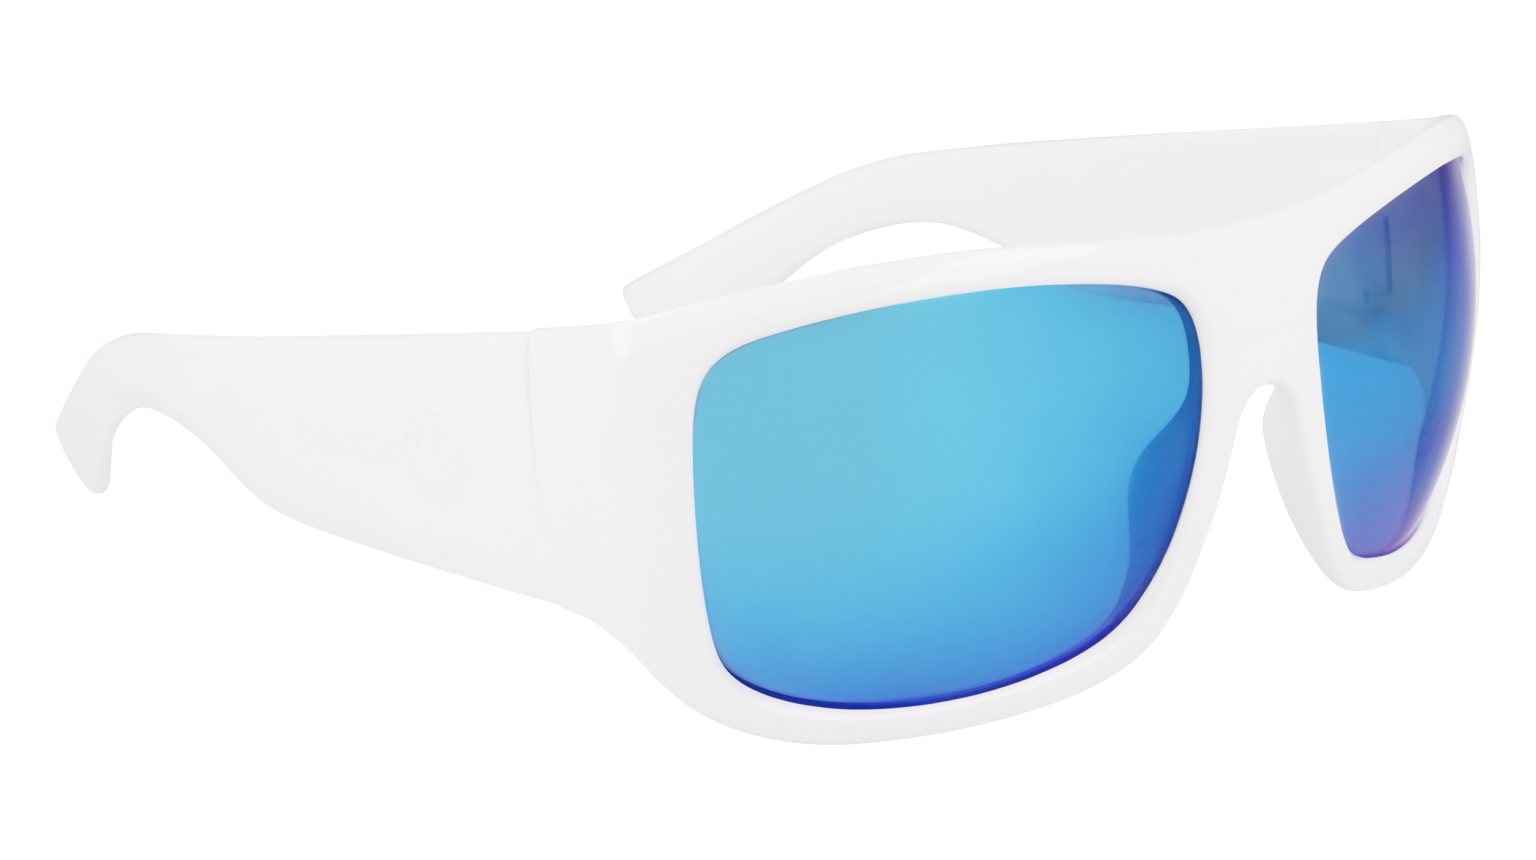 CALYPSO - Shiny White with Polarized Lumalens Blue Ionized Lens